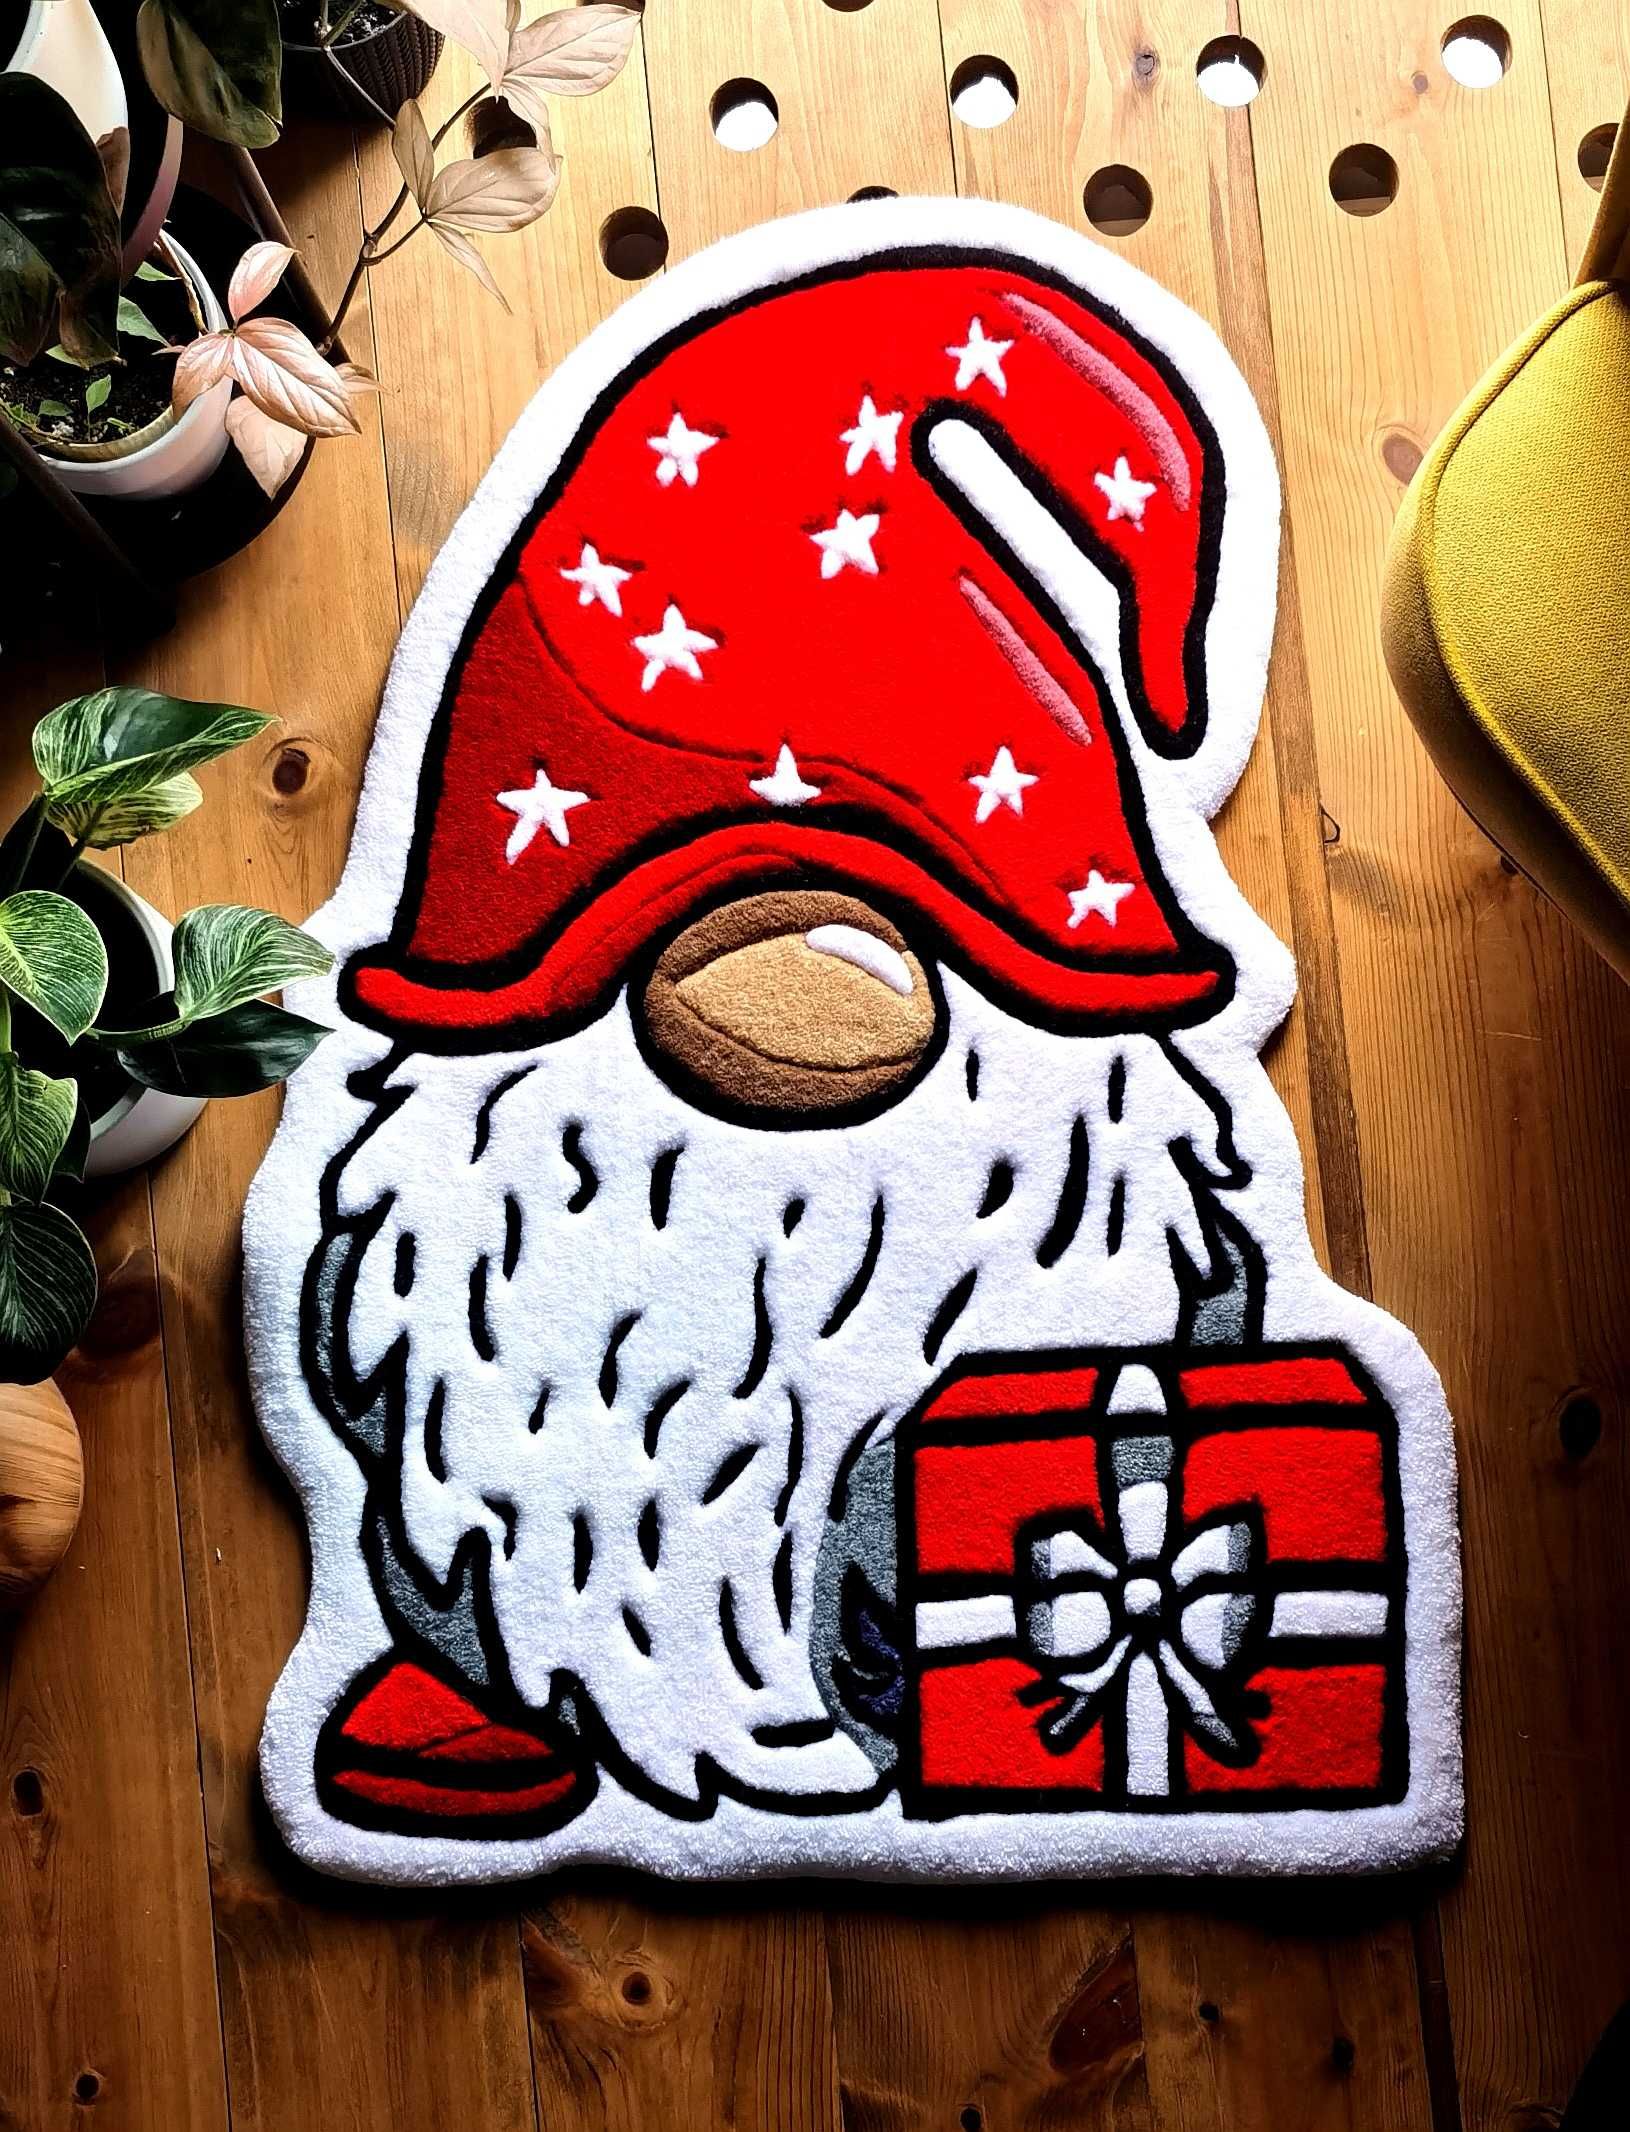 Bożonarodzeniowy krasnal ręcznie wyszywany dywanik.